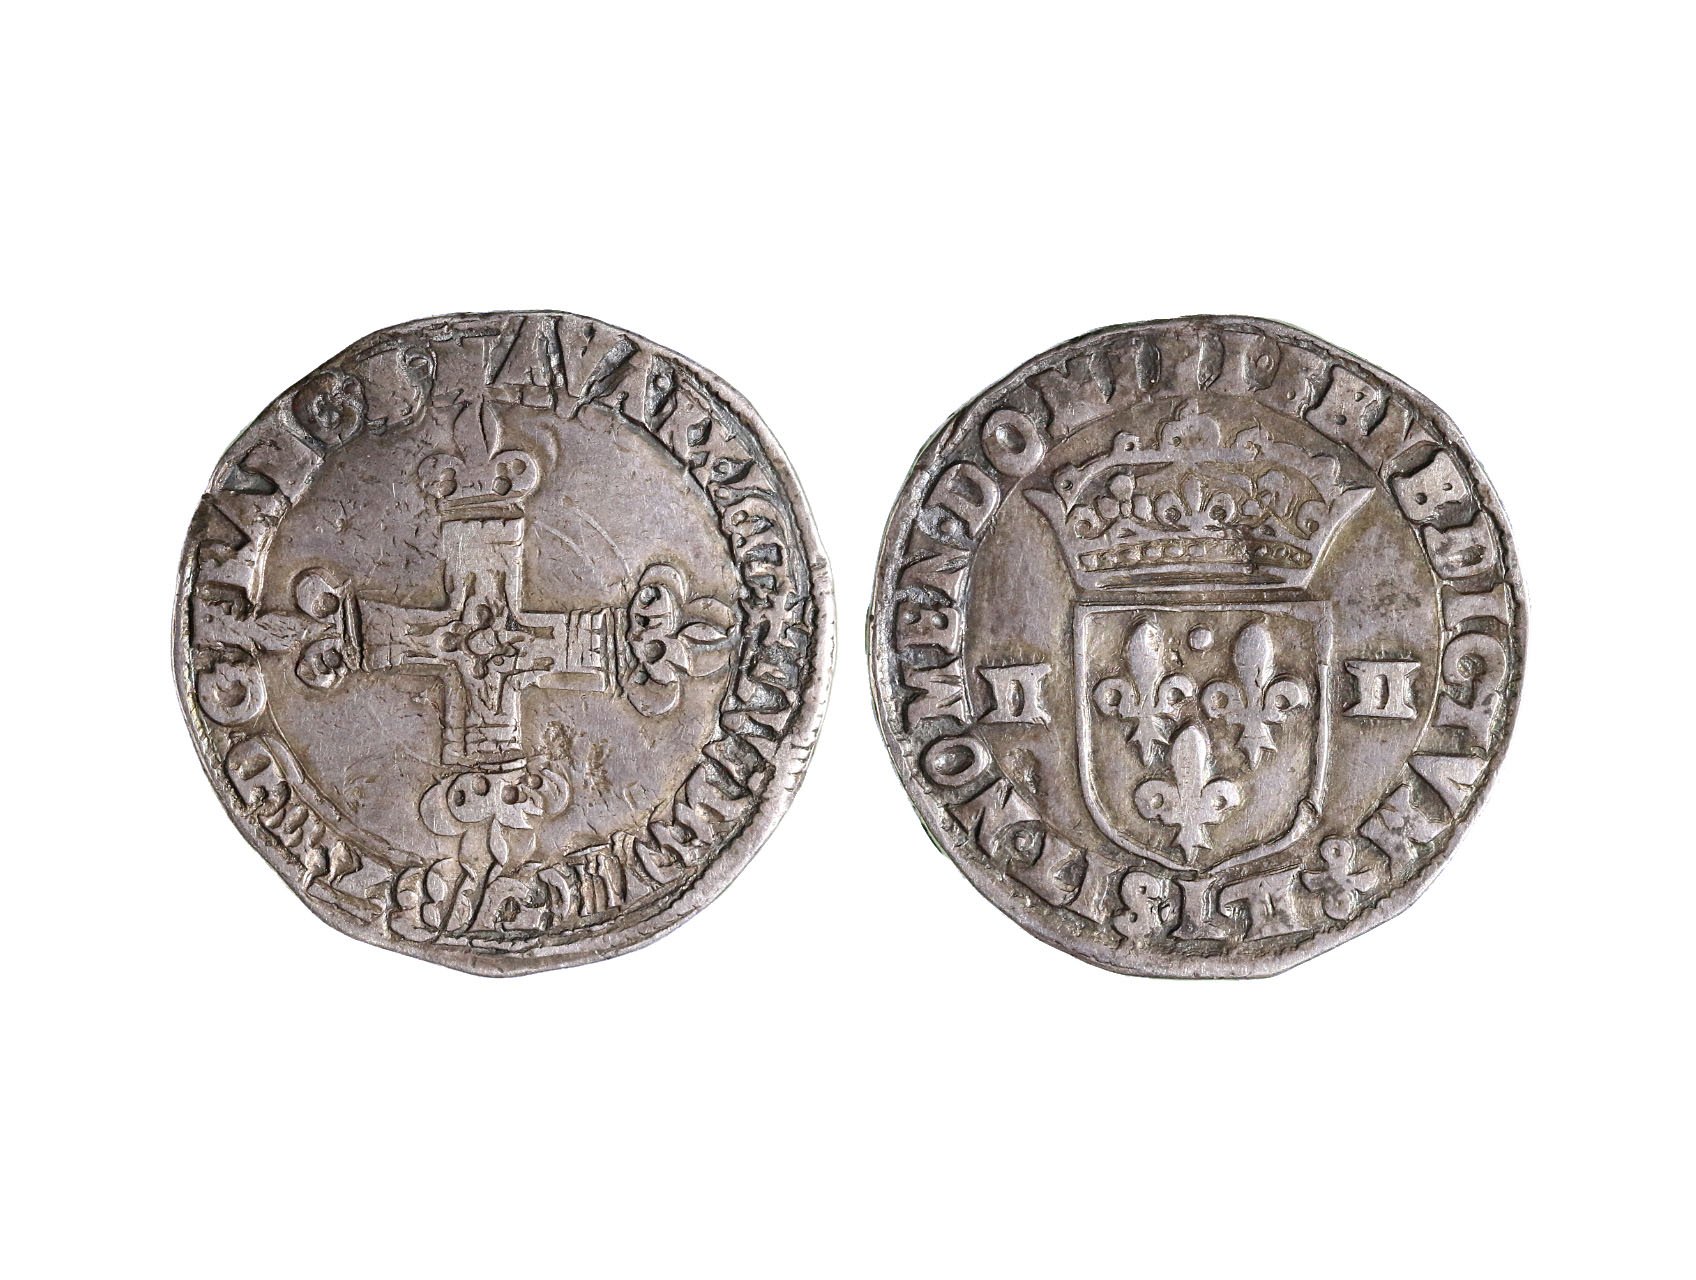 Francie, Jindřich III. 1573-1589 - 1/4 Ecu, letopočet nečitelný, dvojráz, 9.39 g.